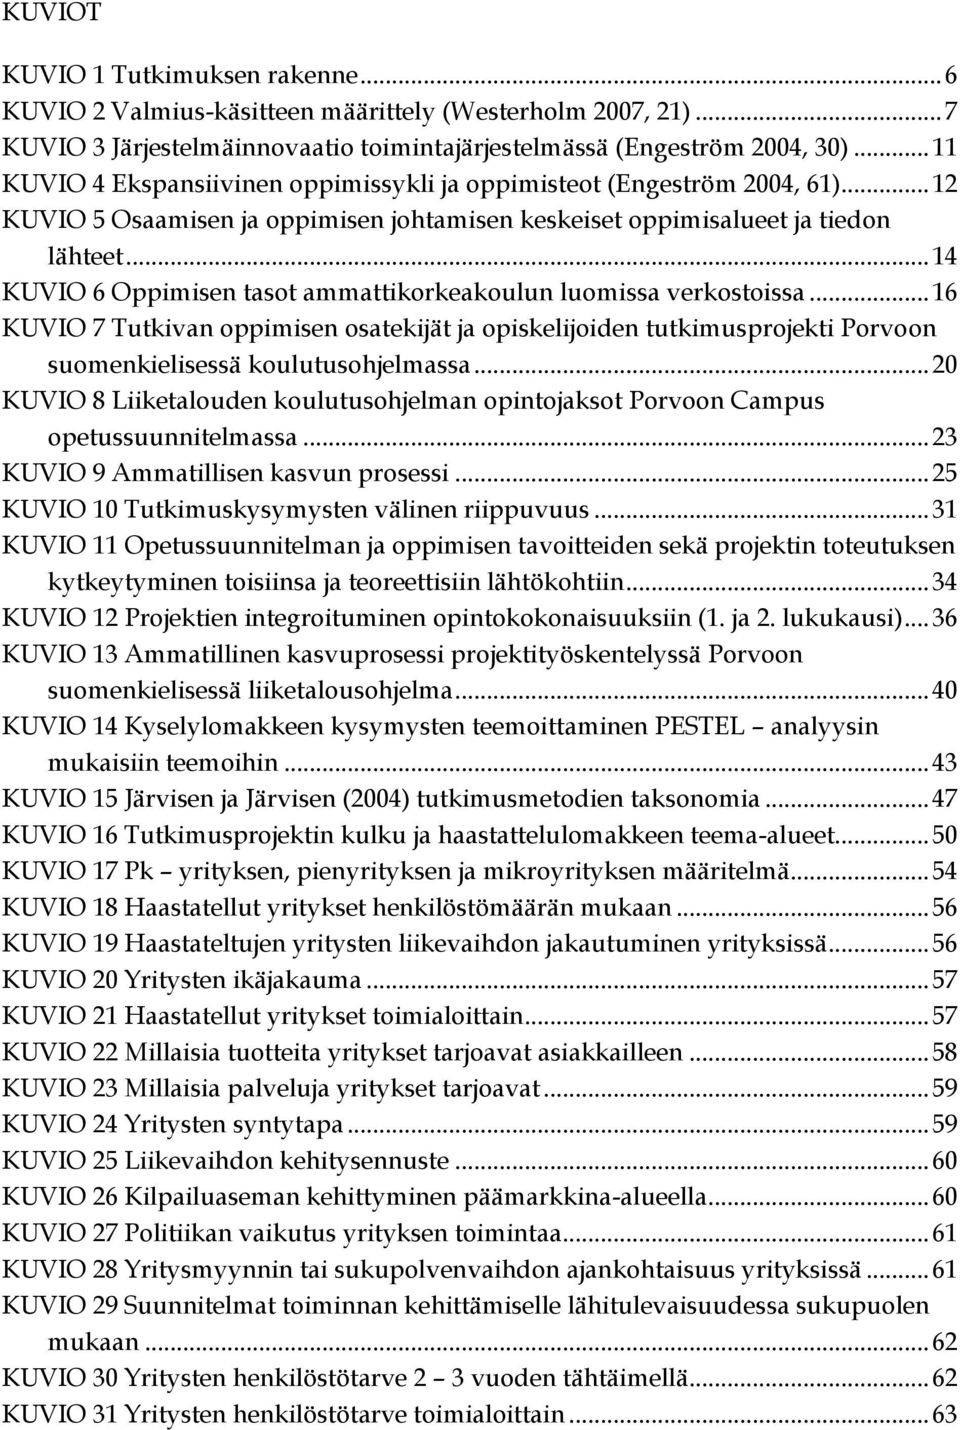 .. 14 KUVIO 6 Oppimisen tasot ammattikorkeakoulun luomissa verkostoissa... 16 KUVIO 7 Tutkivan oppimisen osatekijät ja opiskelijoiden tutkimusprojekti Porvoon suomenkielisessä koulutusohjelmassa.